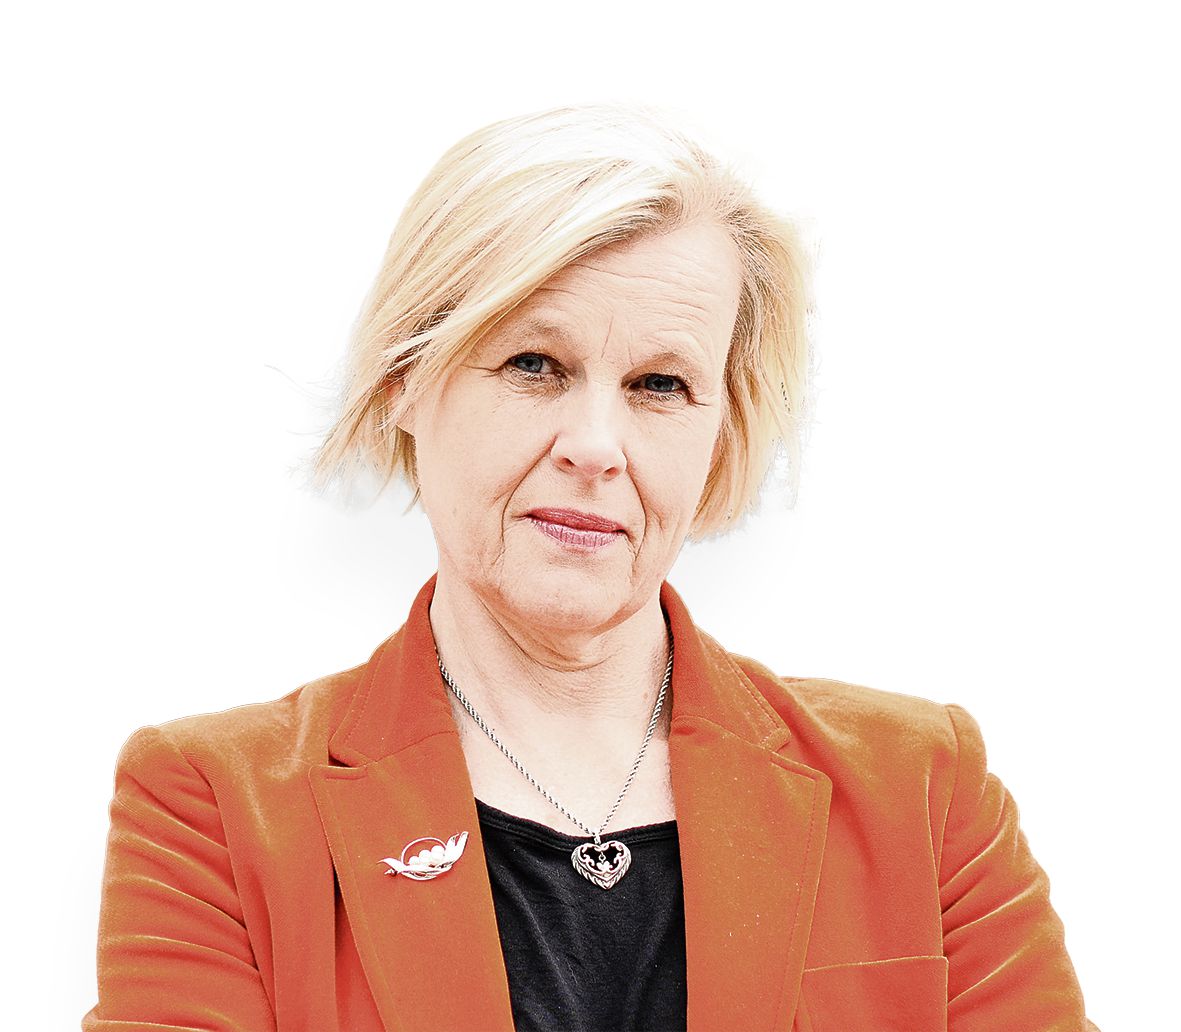 Zweedse politicoloog: ‘De radicaal-rechtse visie op migratie is het nieuwe normaal’ 